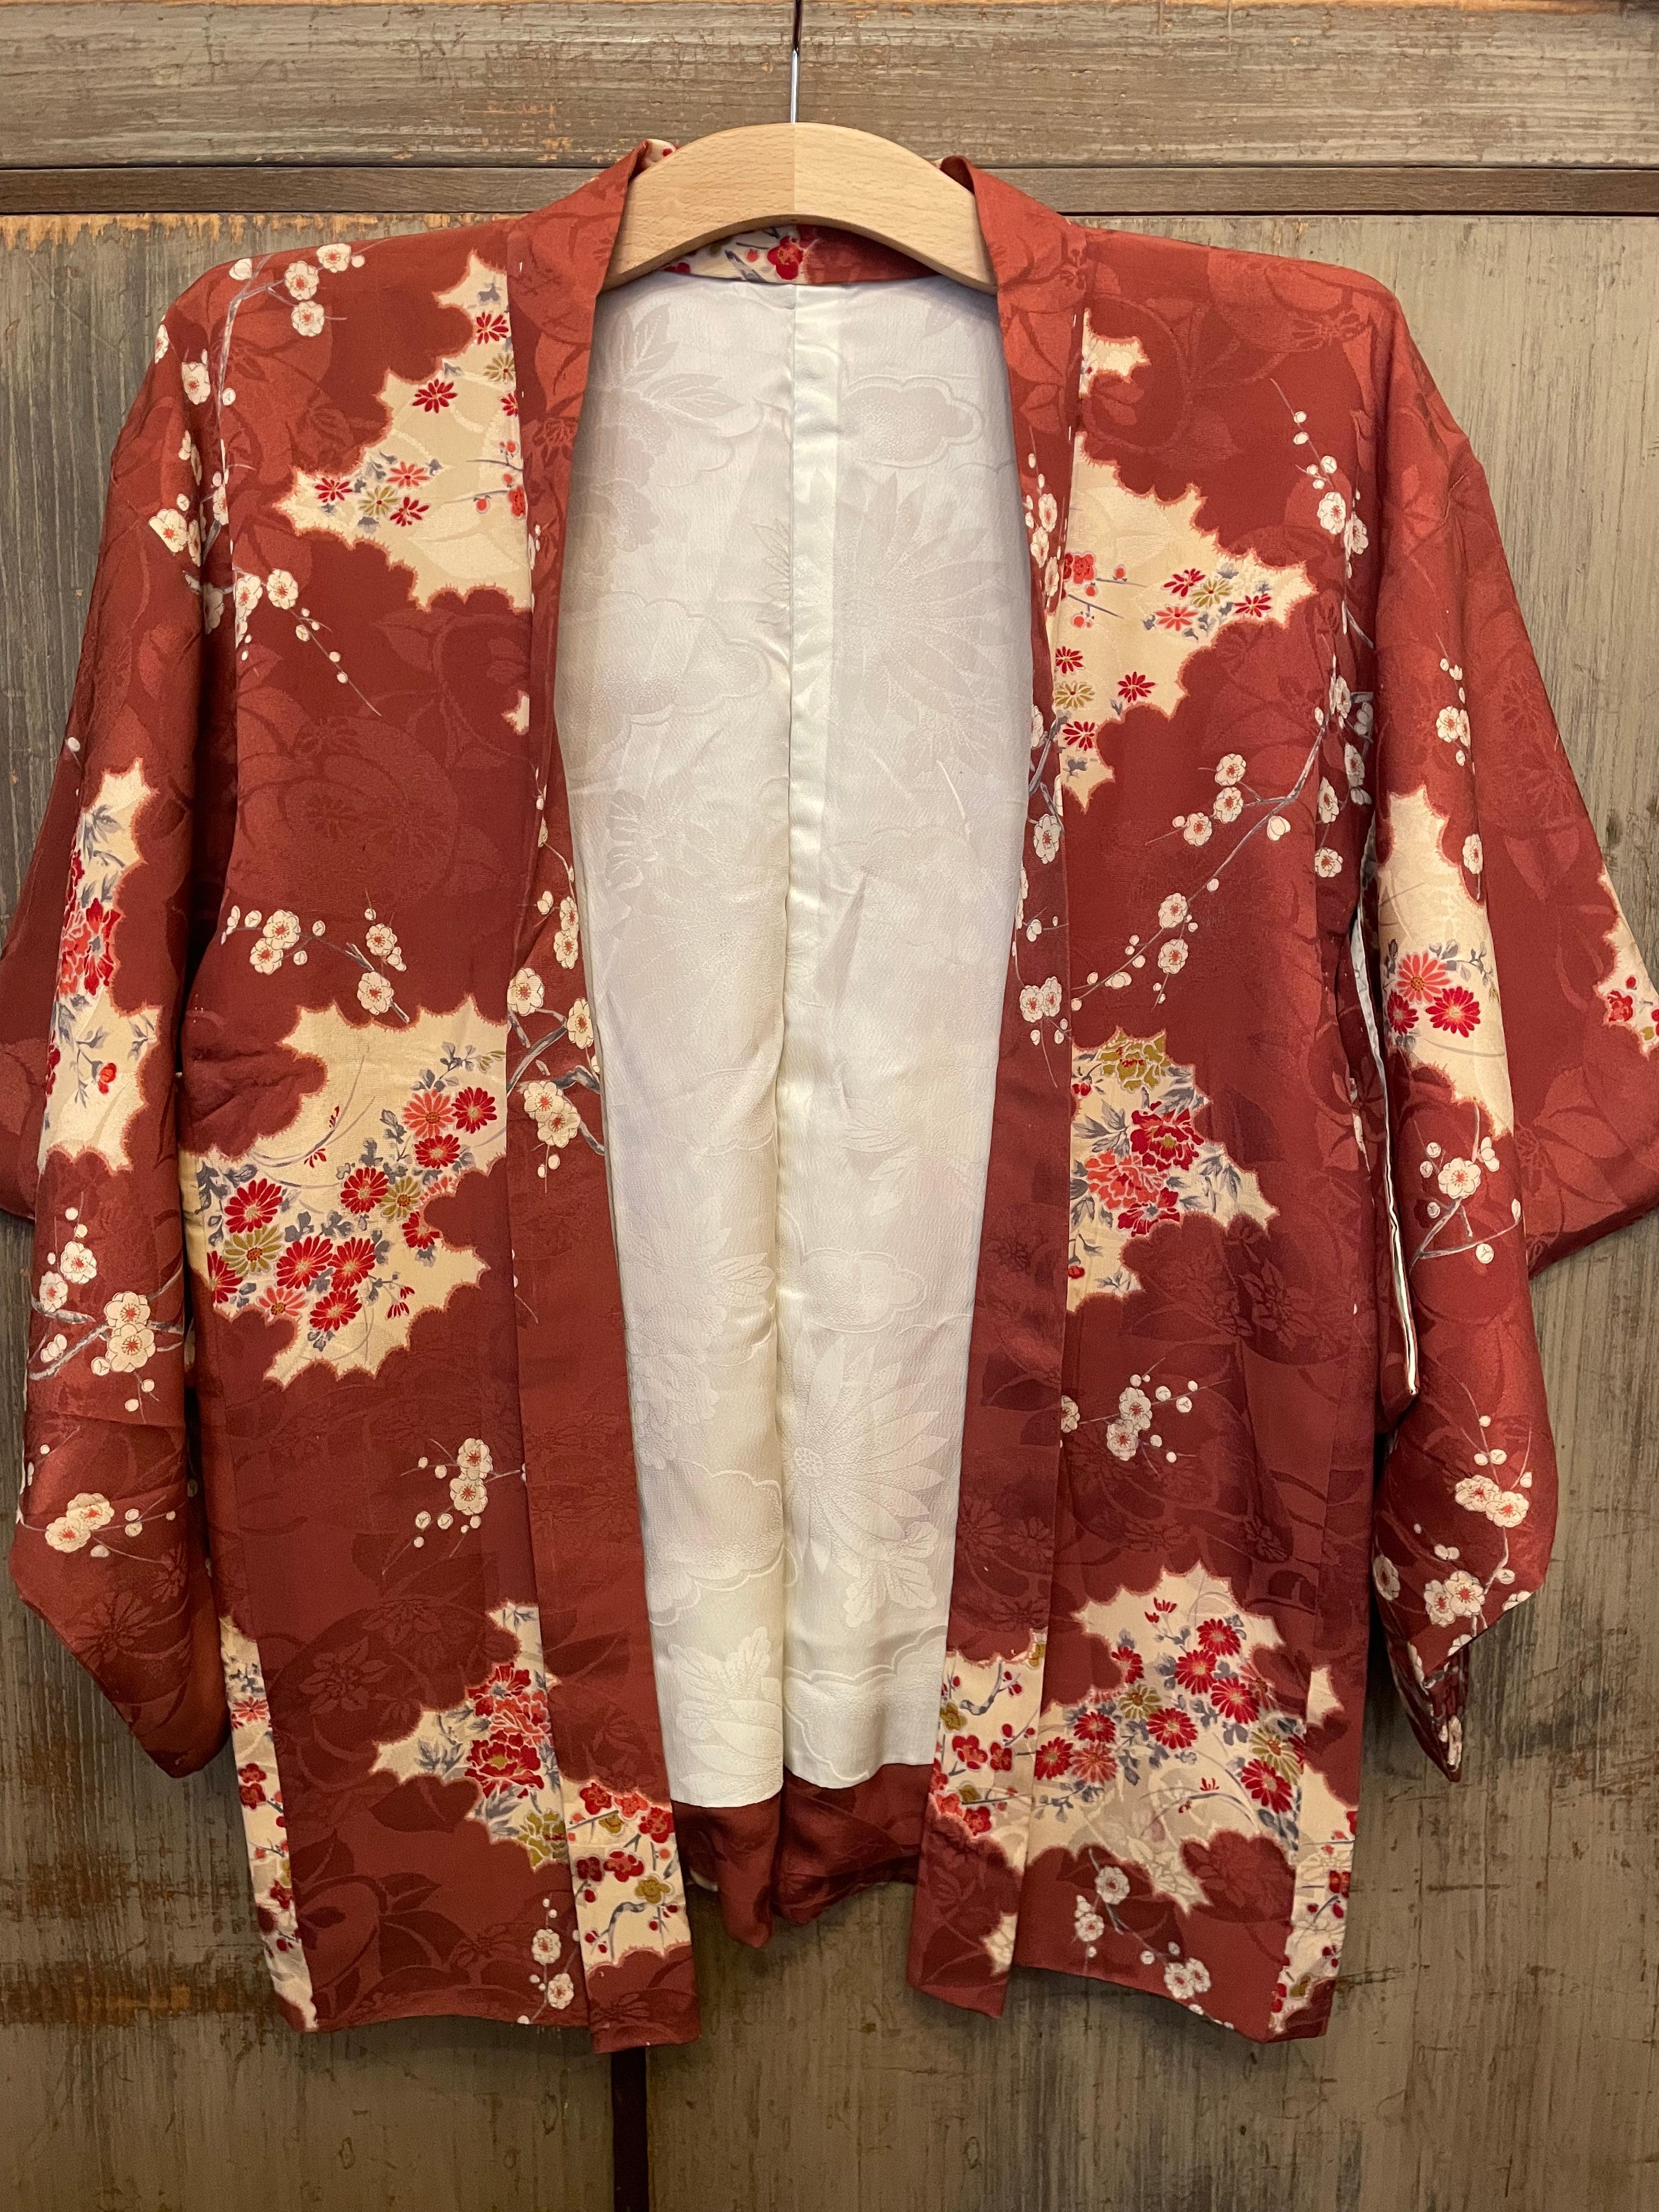 Dies ist eine Seidenjacke, die in Japan hergestellt wurde.
Es wurde in der Showa-Ära in den 1980er Jahren hergestellt.

Der Haori ist eine traditionelle japanische hüft- oder oberschenkellange Jacke, die über einem Kimono getragen wird. Der Haori